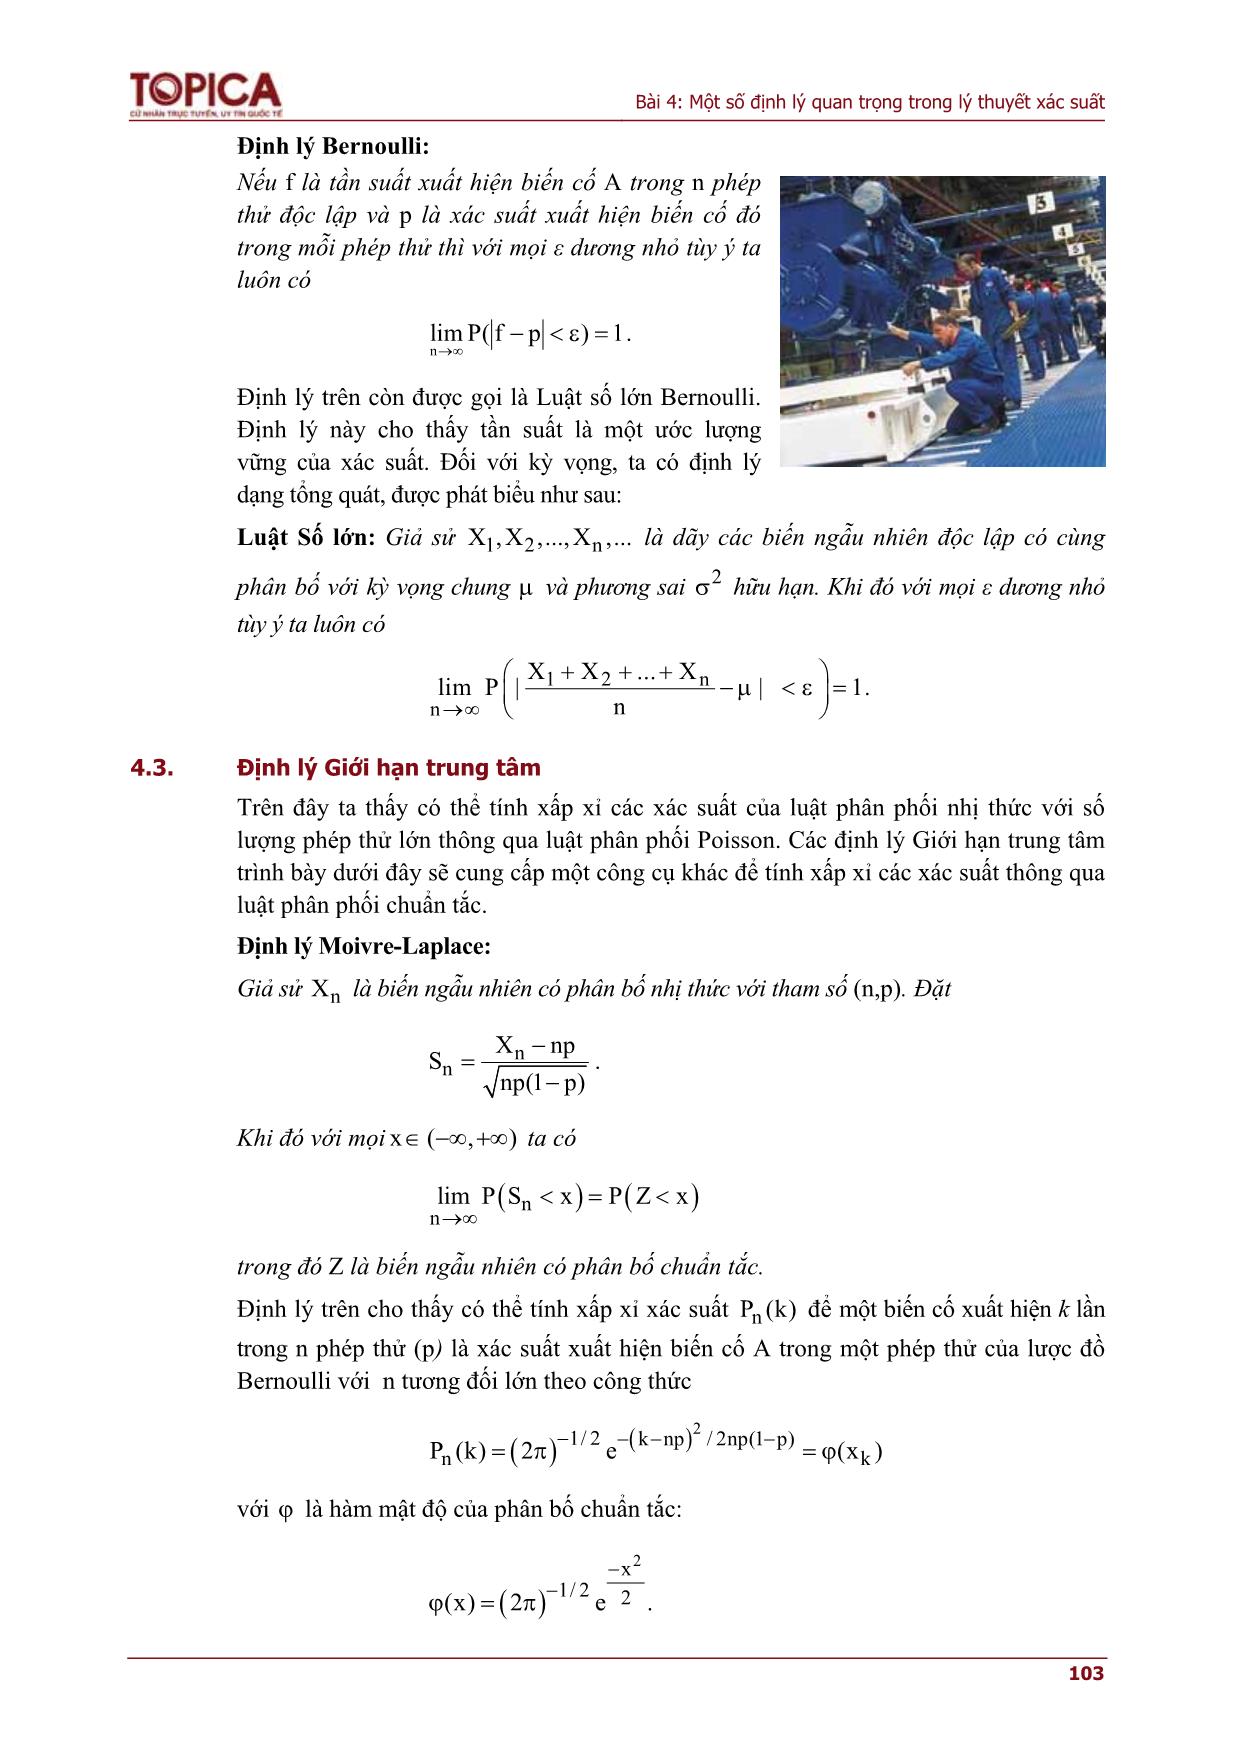 Bài giảng Lý thuyết xác suất và thống kê - Bài 4: Một số định lý quan trọng trong lý thuyết xác suất trang 3